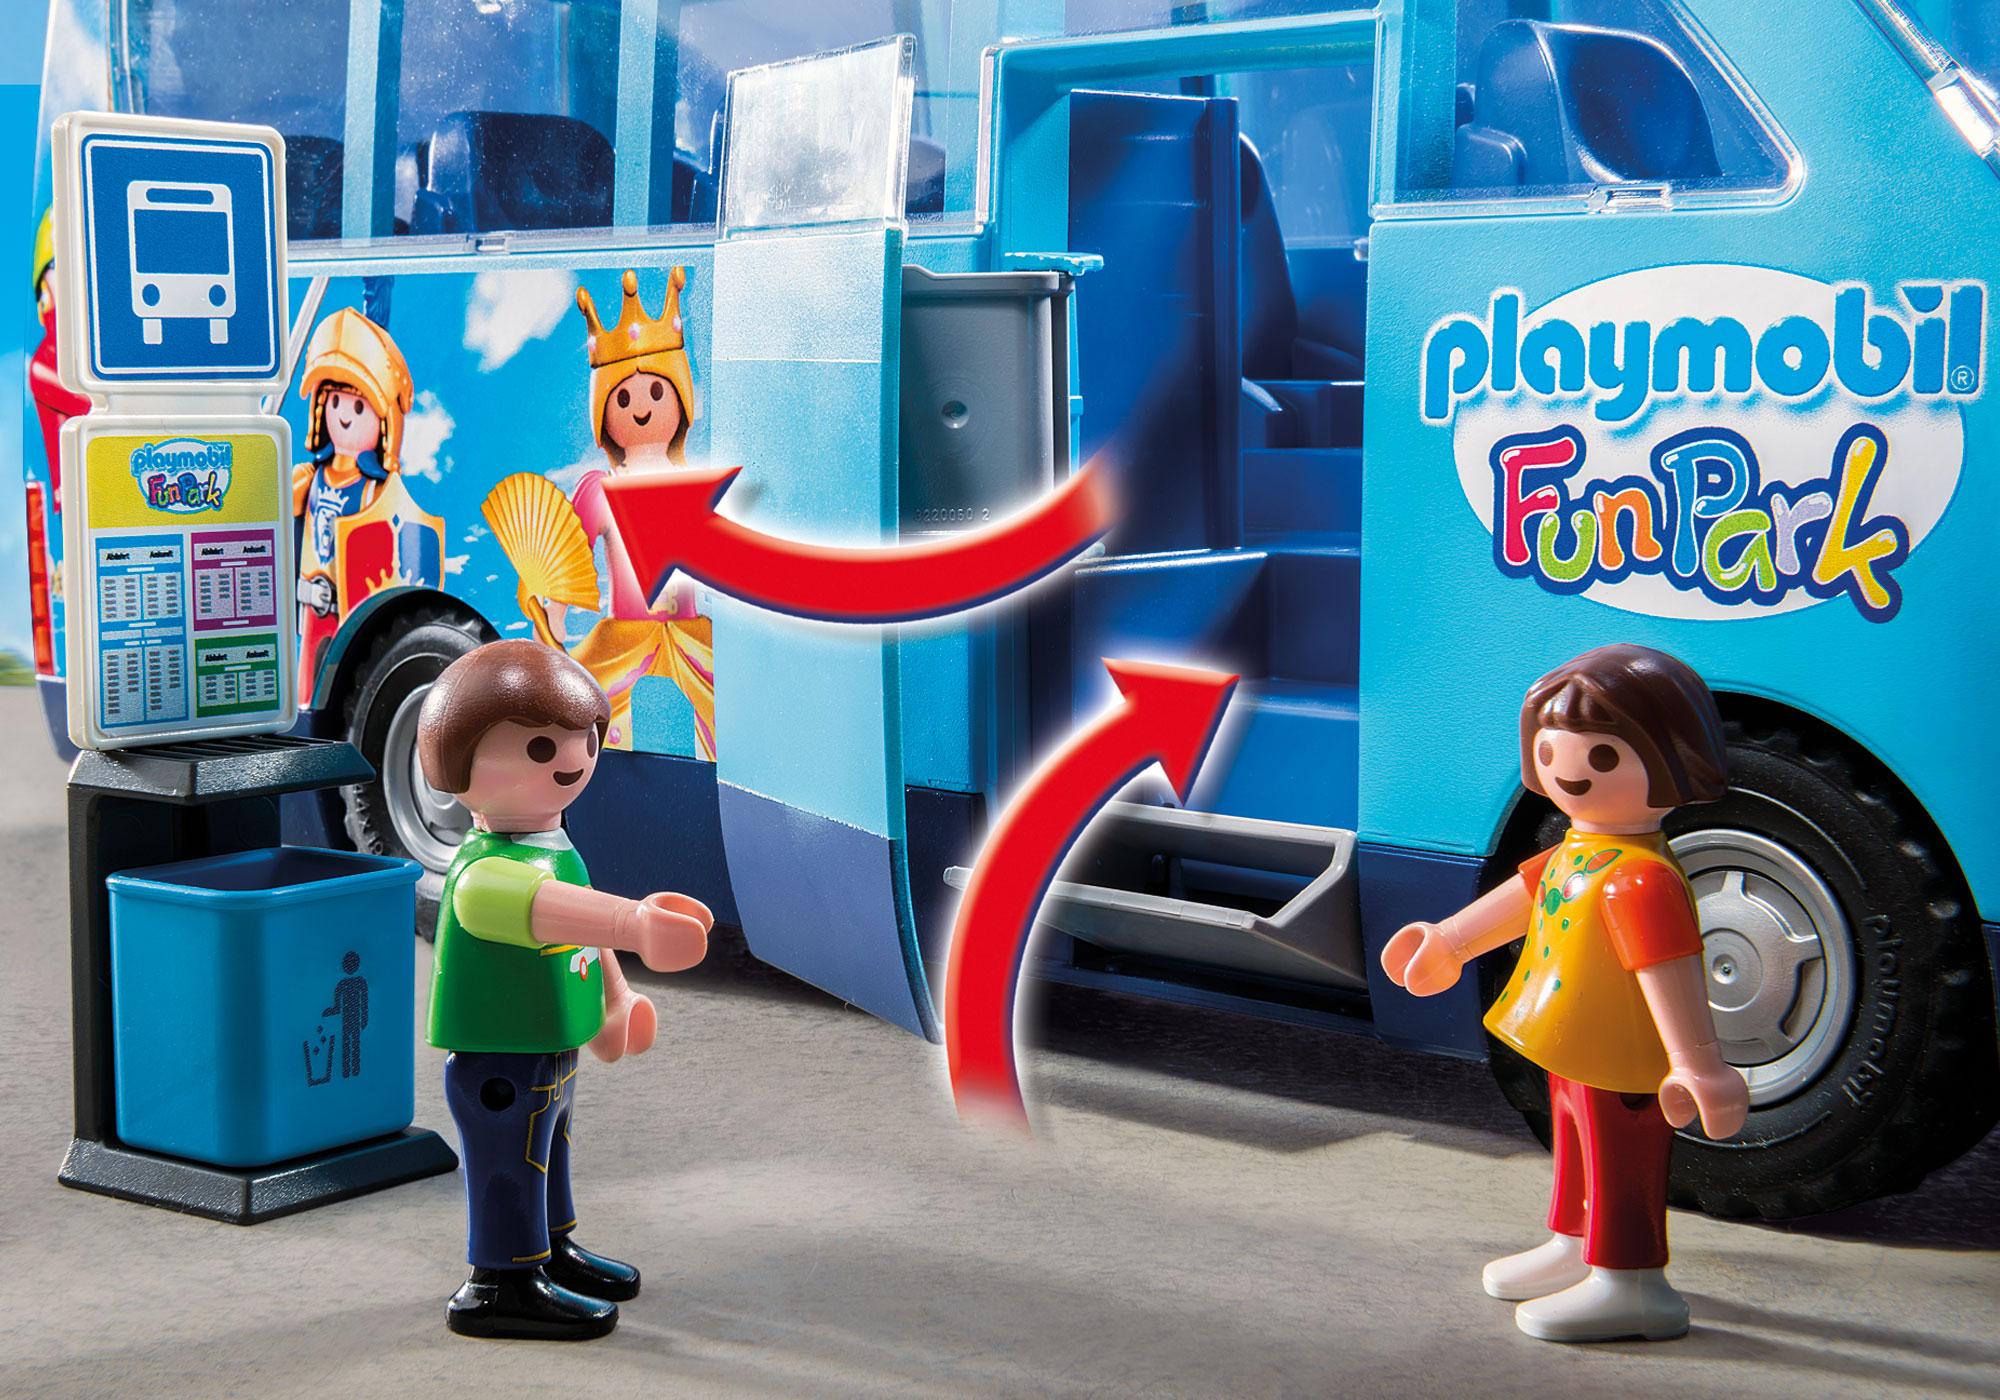 bus funpark playmobil